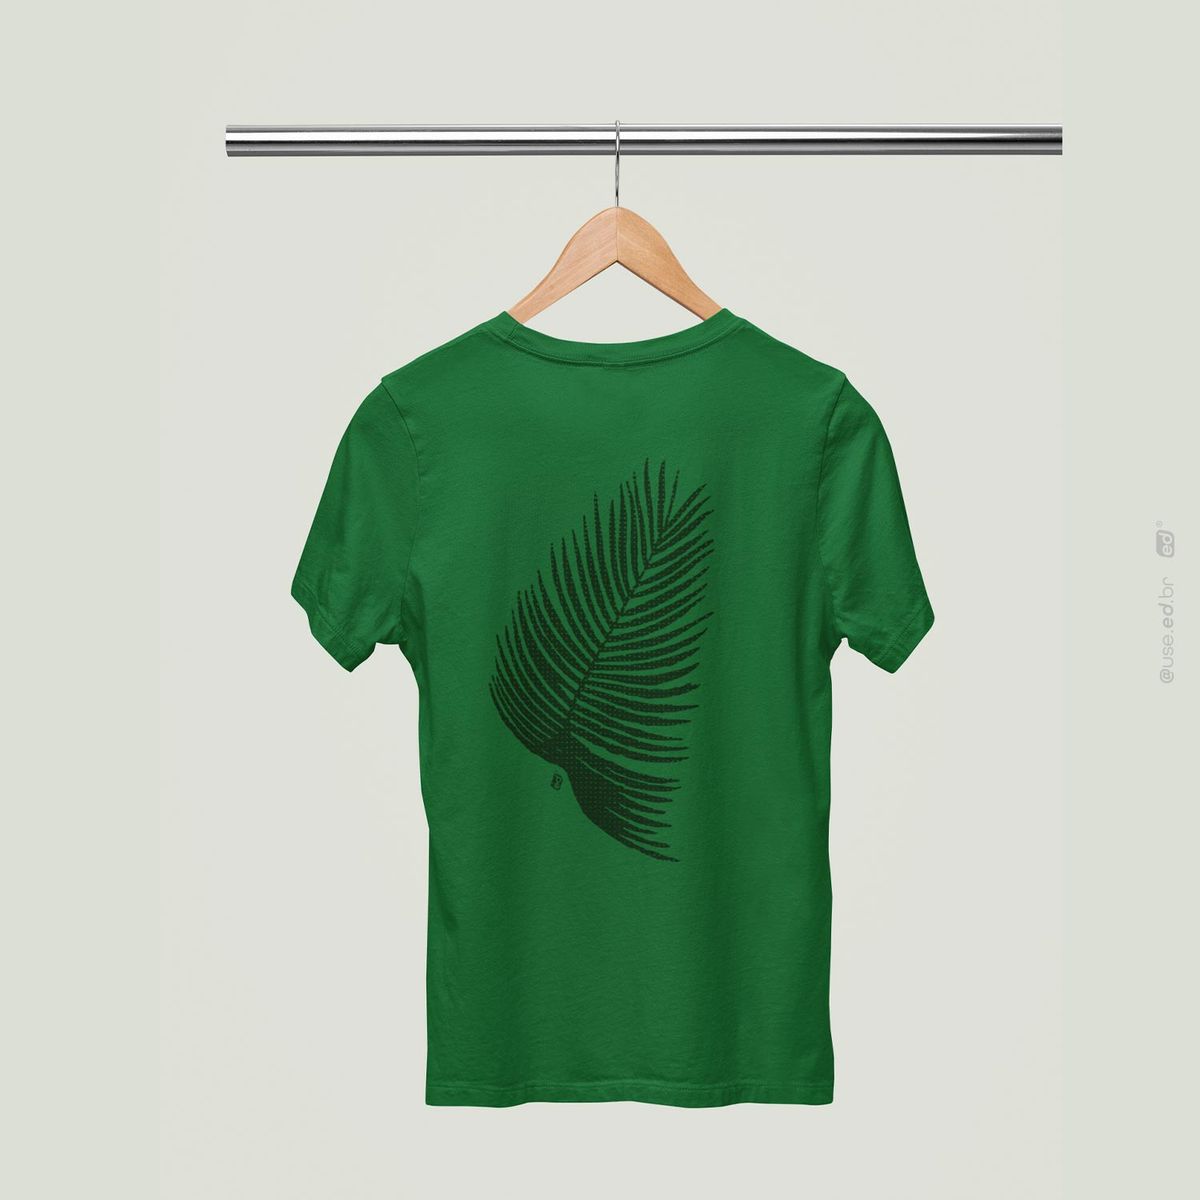 Nome do produto: Folhagem Coqueiro - Camiseta Estampada Folhagem Coqueiro Quality Verde